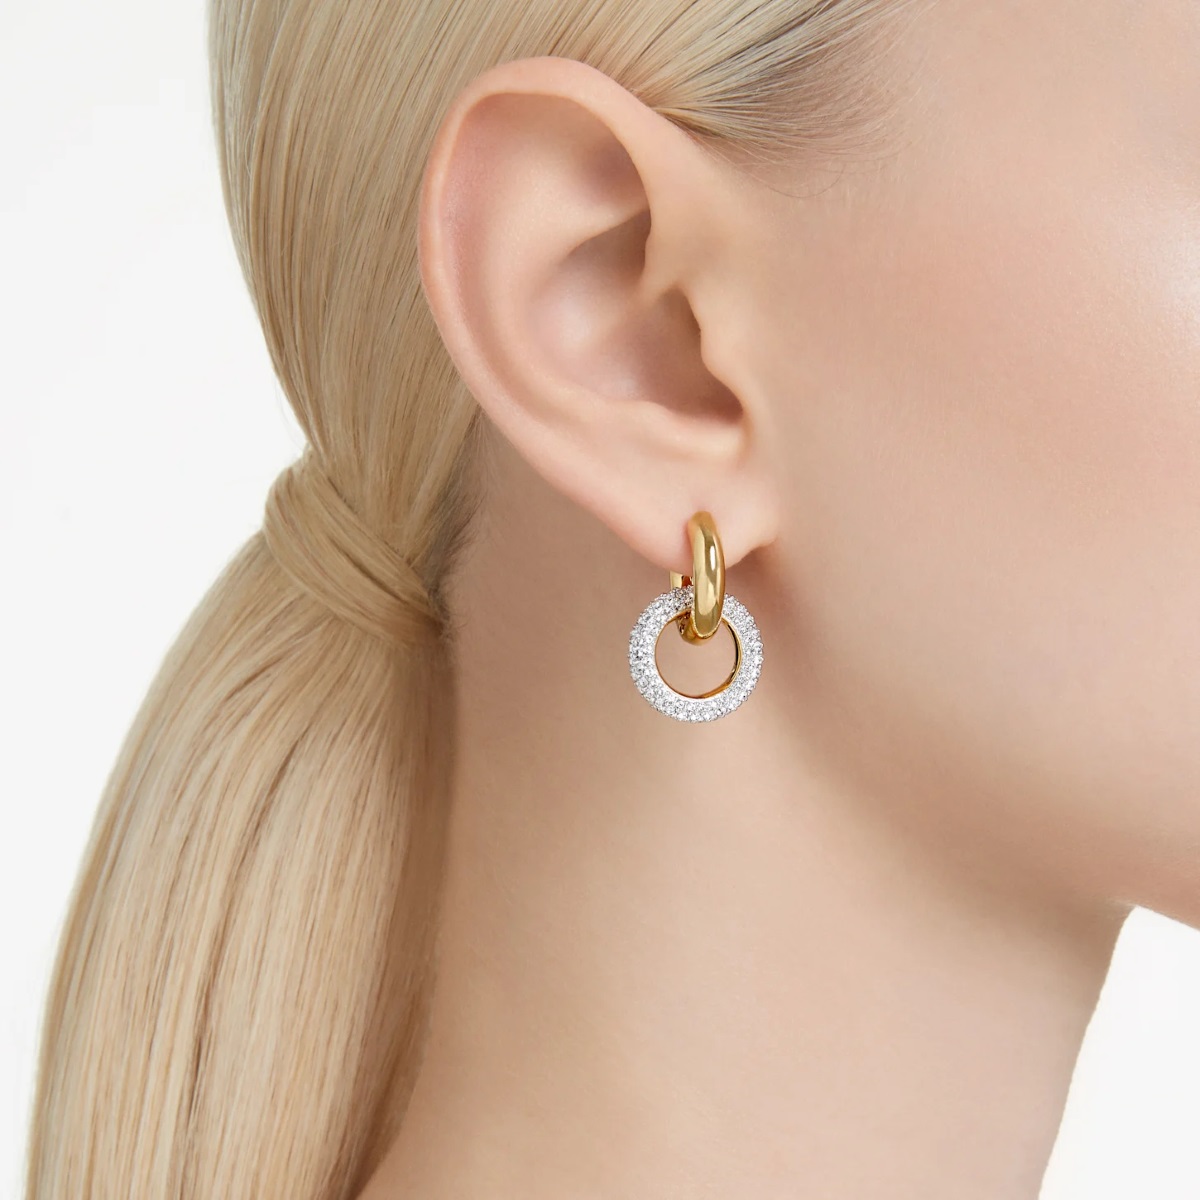 Swarovski Dextera Hoop Earrings Interlocking Loop - White with Gold Tone Plating